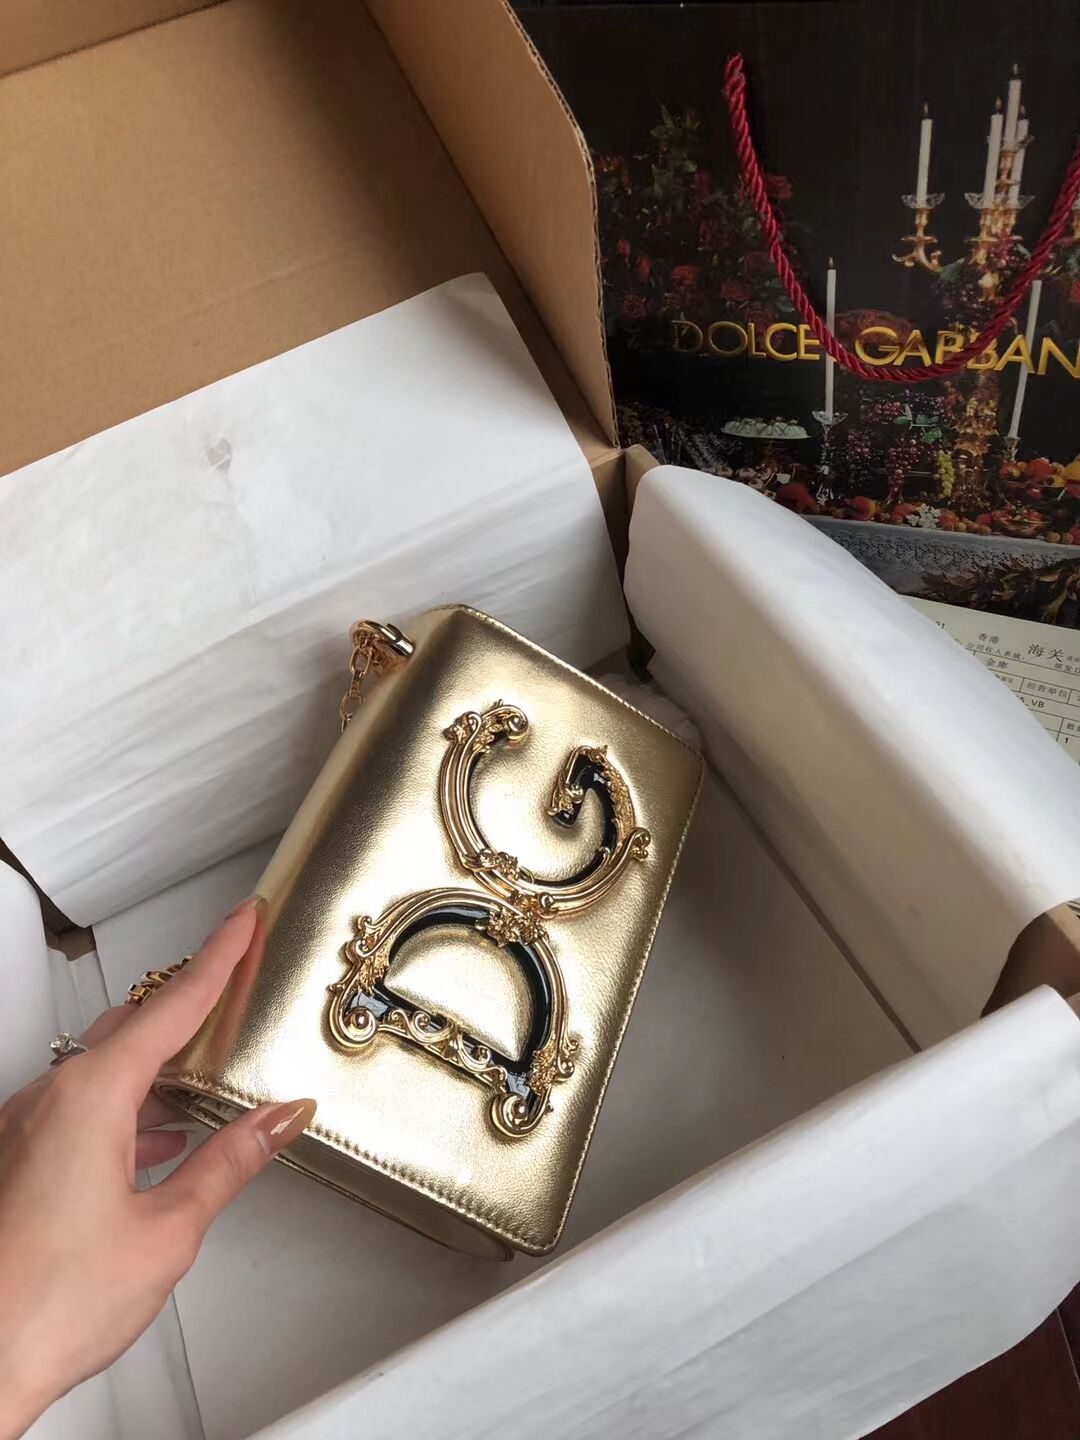 Dolce & Gabbana Origianl Leather Shoulder Bag 4006 gold